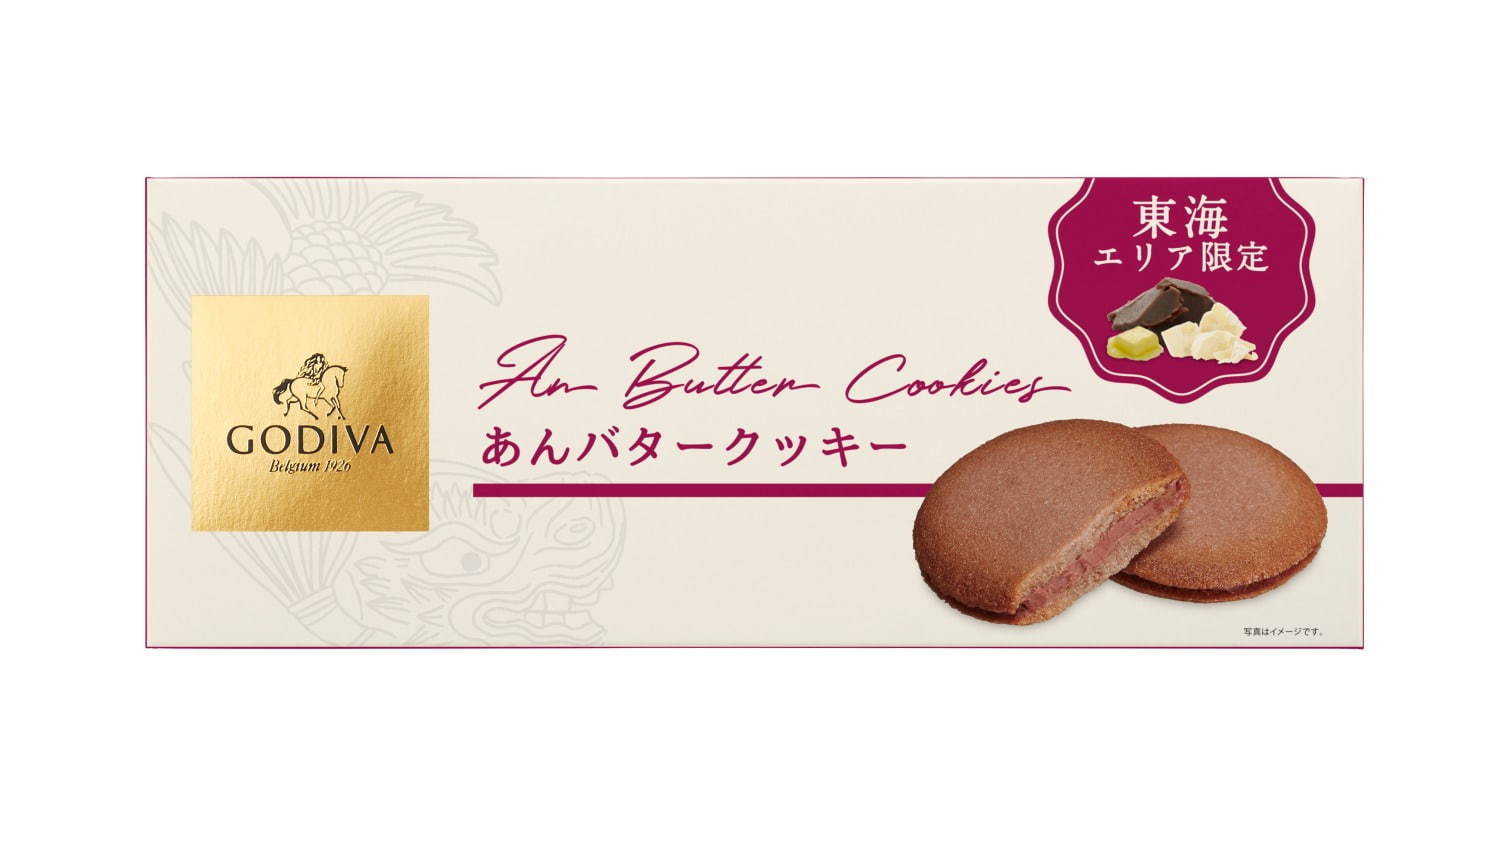 「ゴディバ あんバタークッキー」8枚入 1,200円＋税